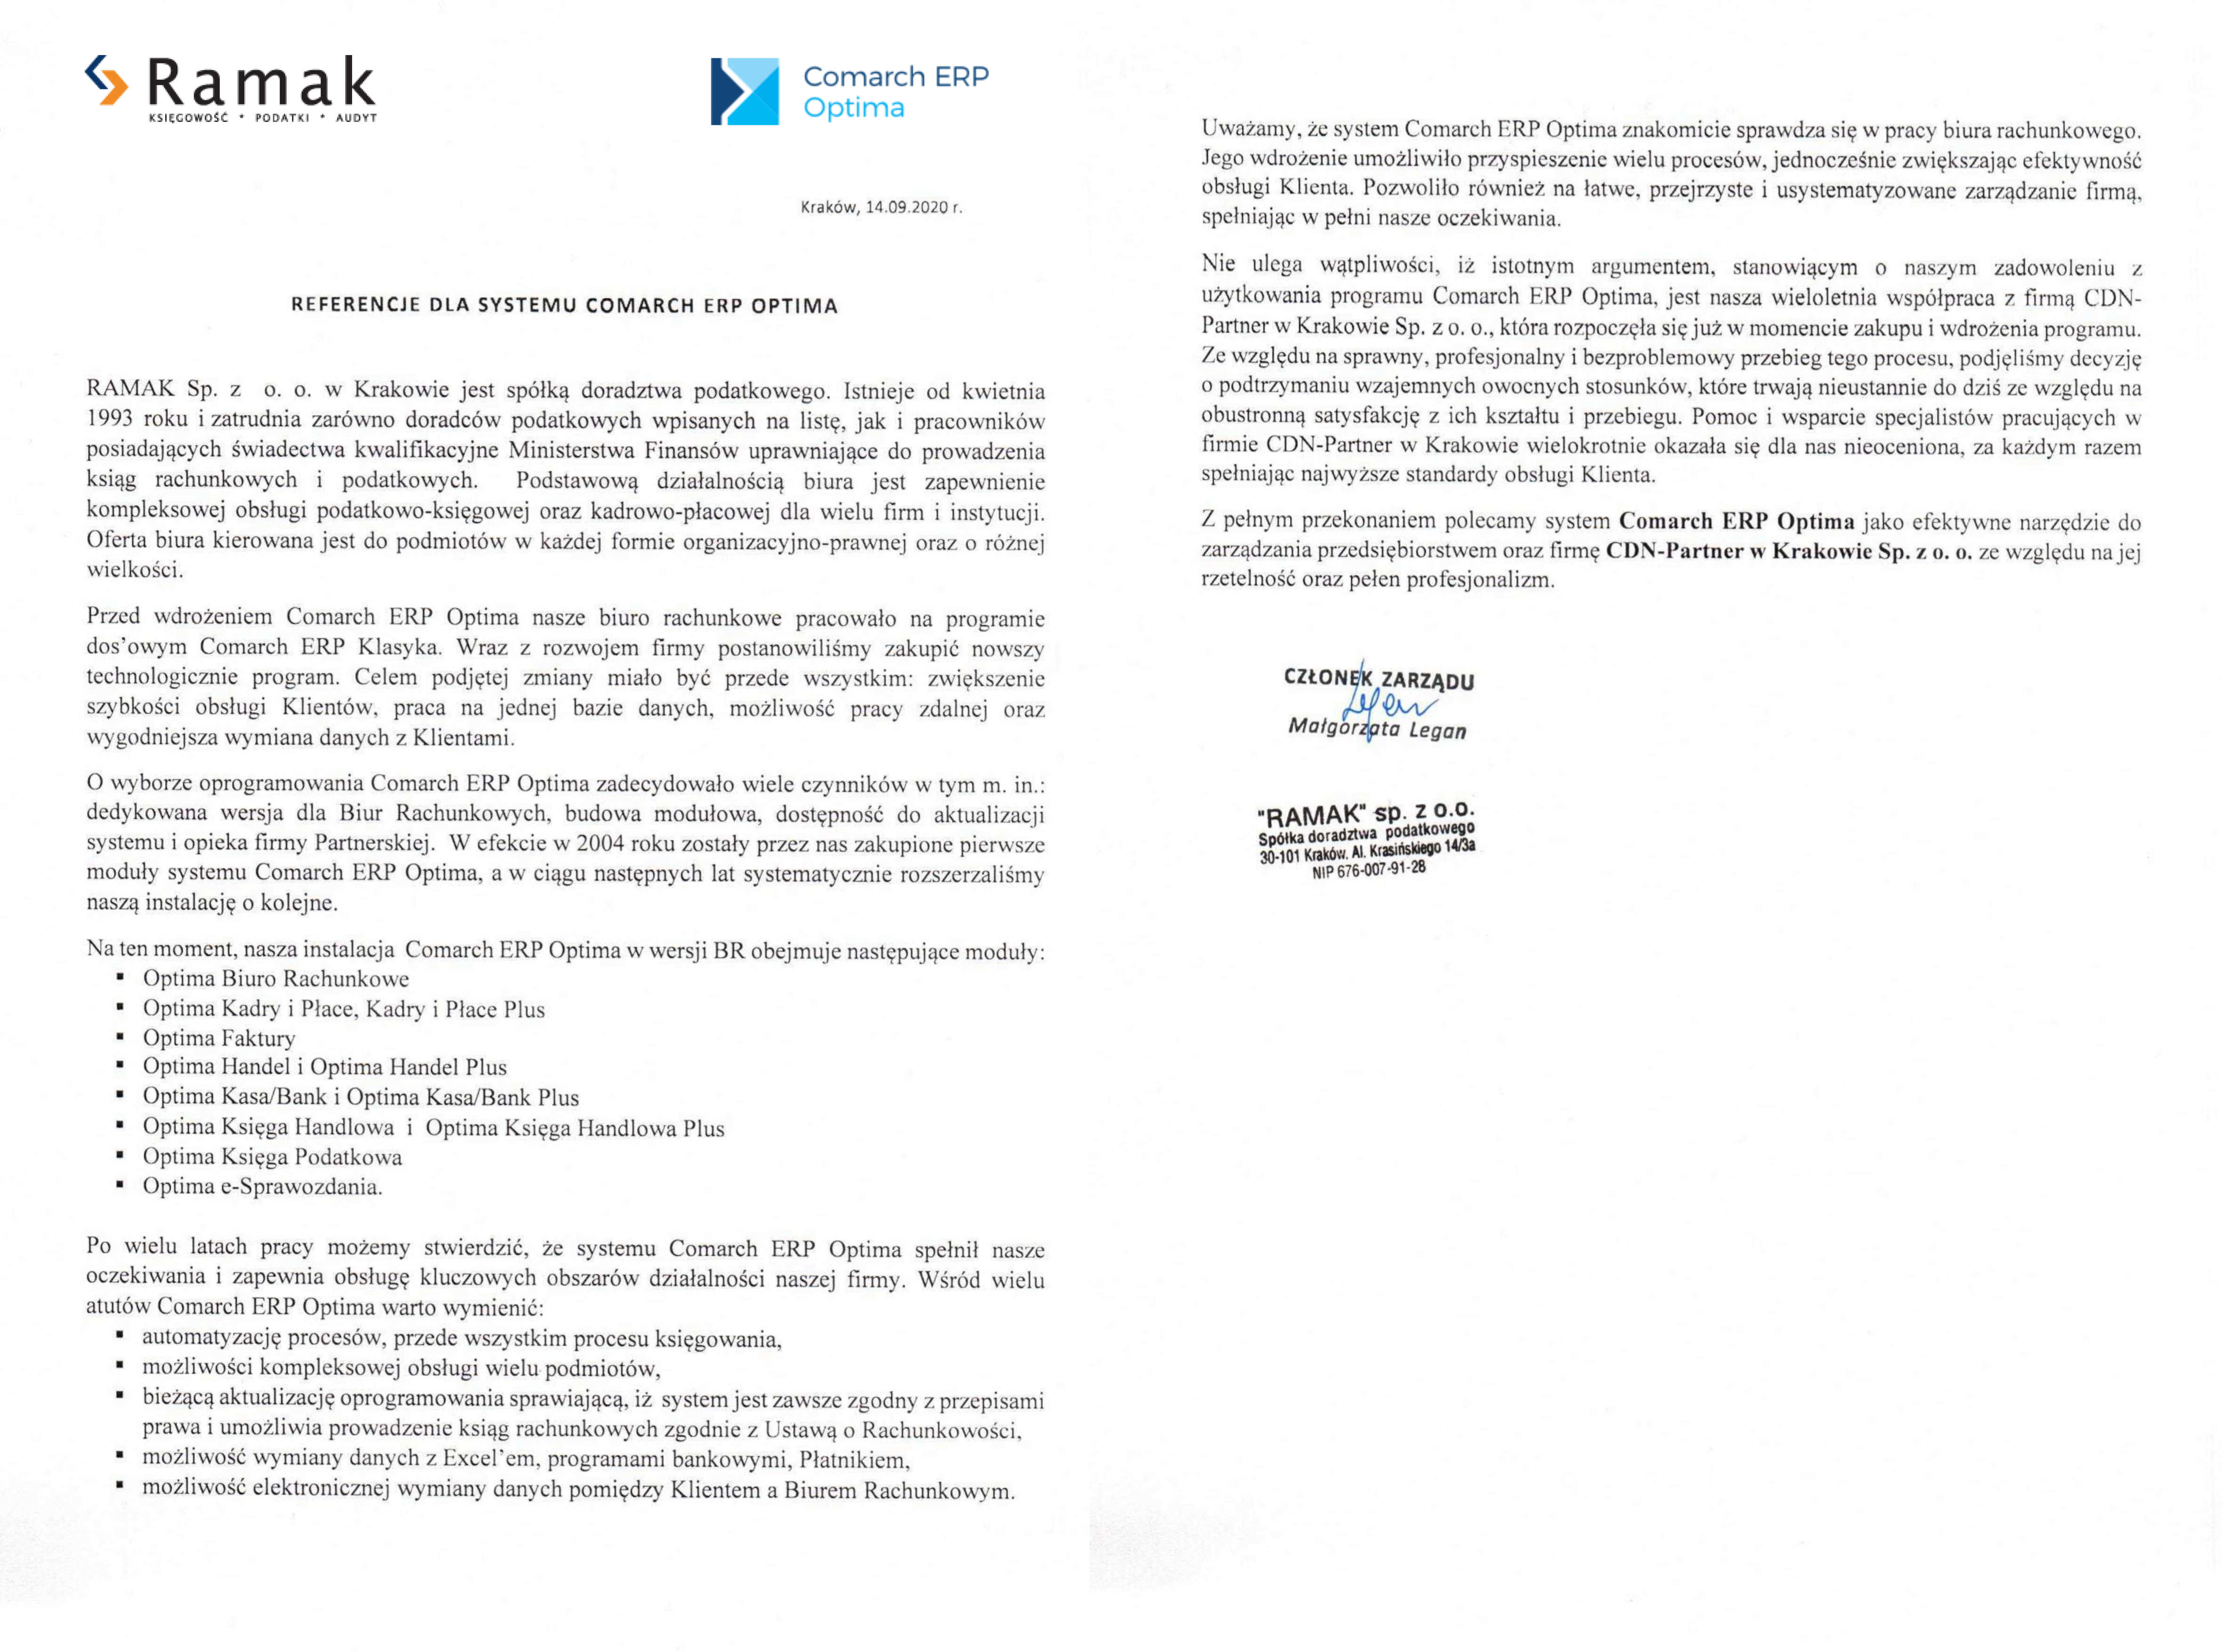 Ramak referencje dla programu Comarch ERP Optima oraz dla firmy wdrożeniowej CDN-Partner w Krakowie